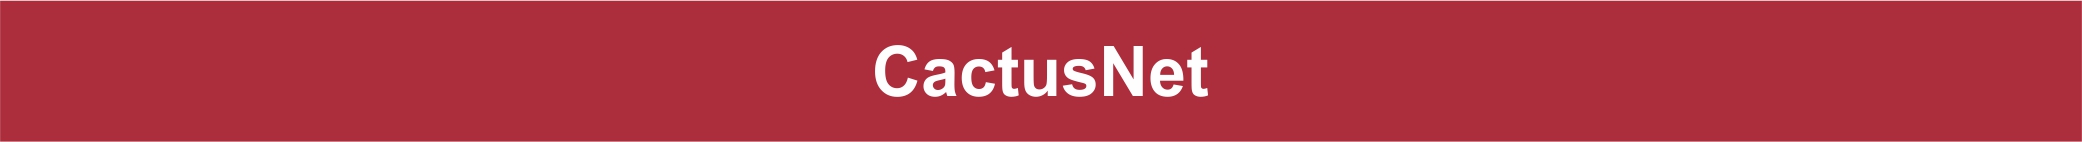 CactusNet Header